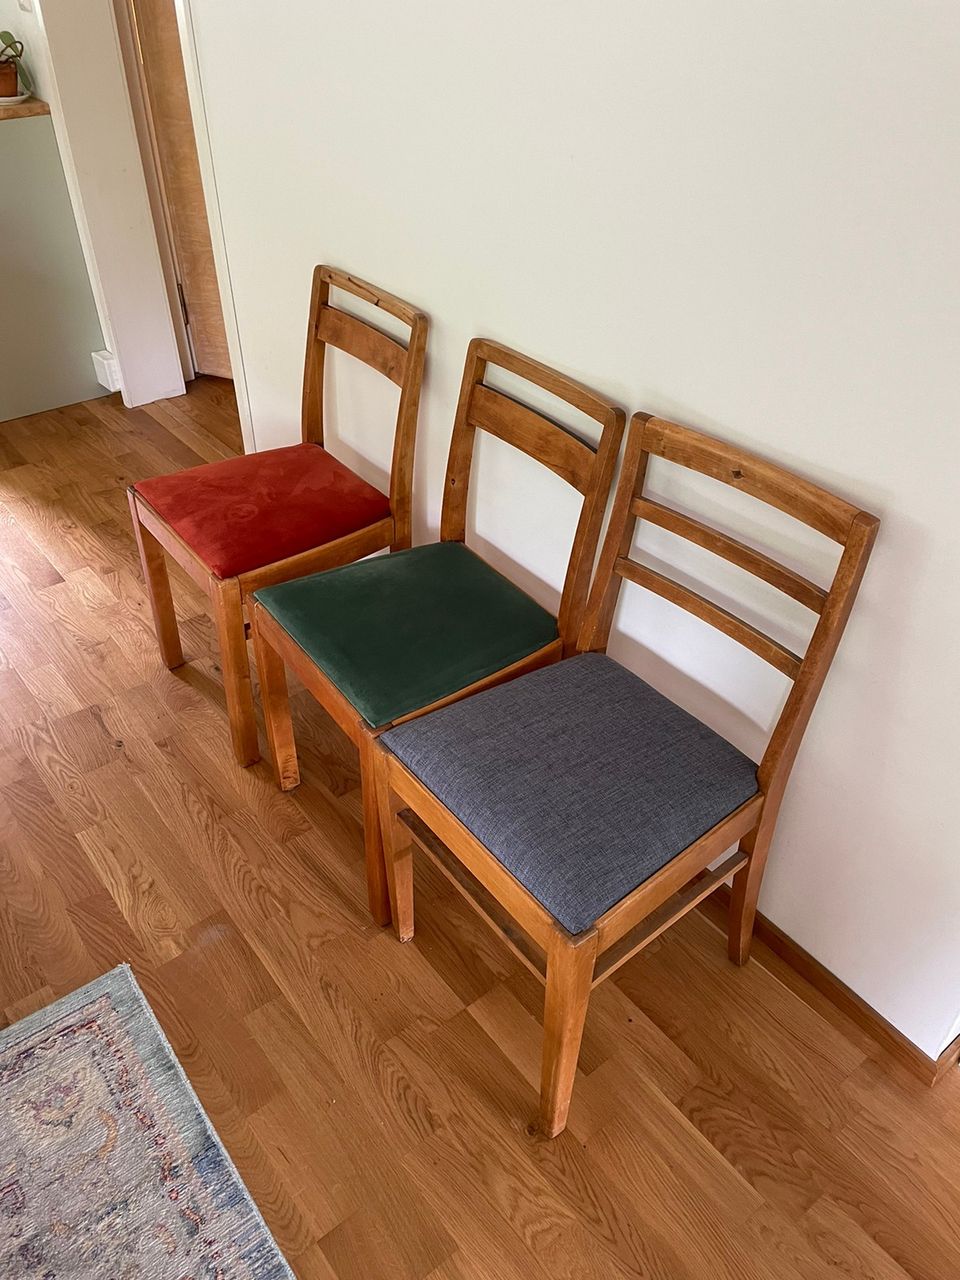 60-70 luvun tuolit 3kpl